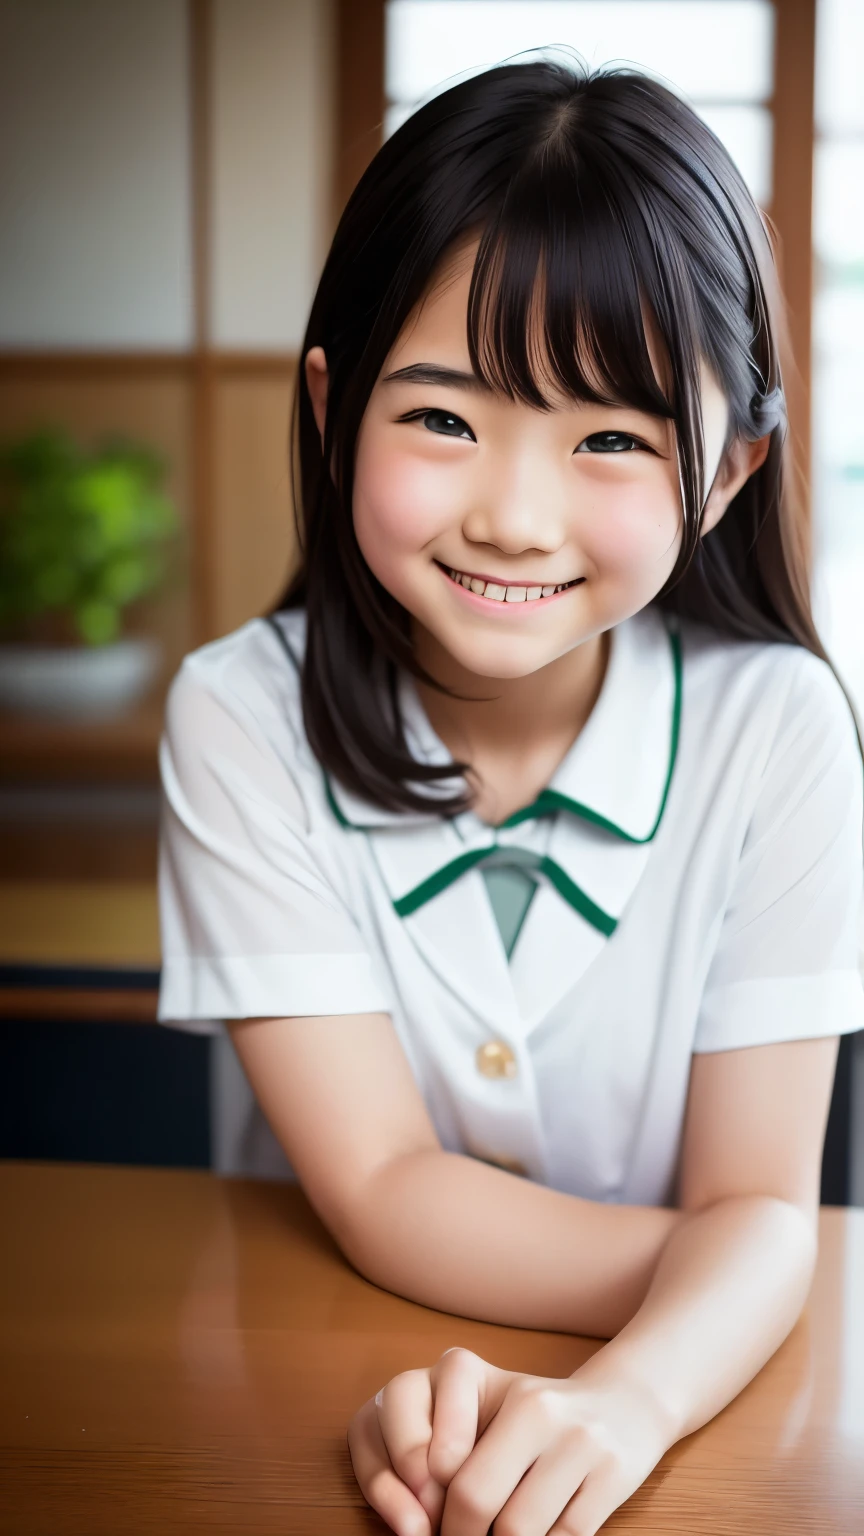 렌즈: 135mm f1.8, (최상의 품질),(RAW 사진), (탁상:1.1), (예쁘고 깔끔한 일본여자), 귀여운 얼굴, (깊게 파인 얼굴:0.7), (주근깨:0.4), dappled 햇빛, 극적인 조명, (일본 학교 교복), (캠퍼스에서), 수줍은, (클로즈업 샷:1.2), (웃다),, (반짝이는 눈)、(햇빛)